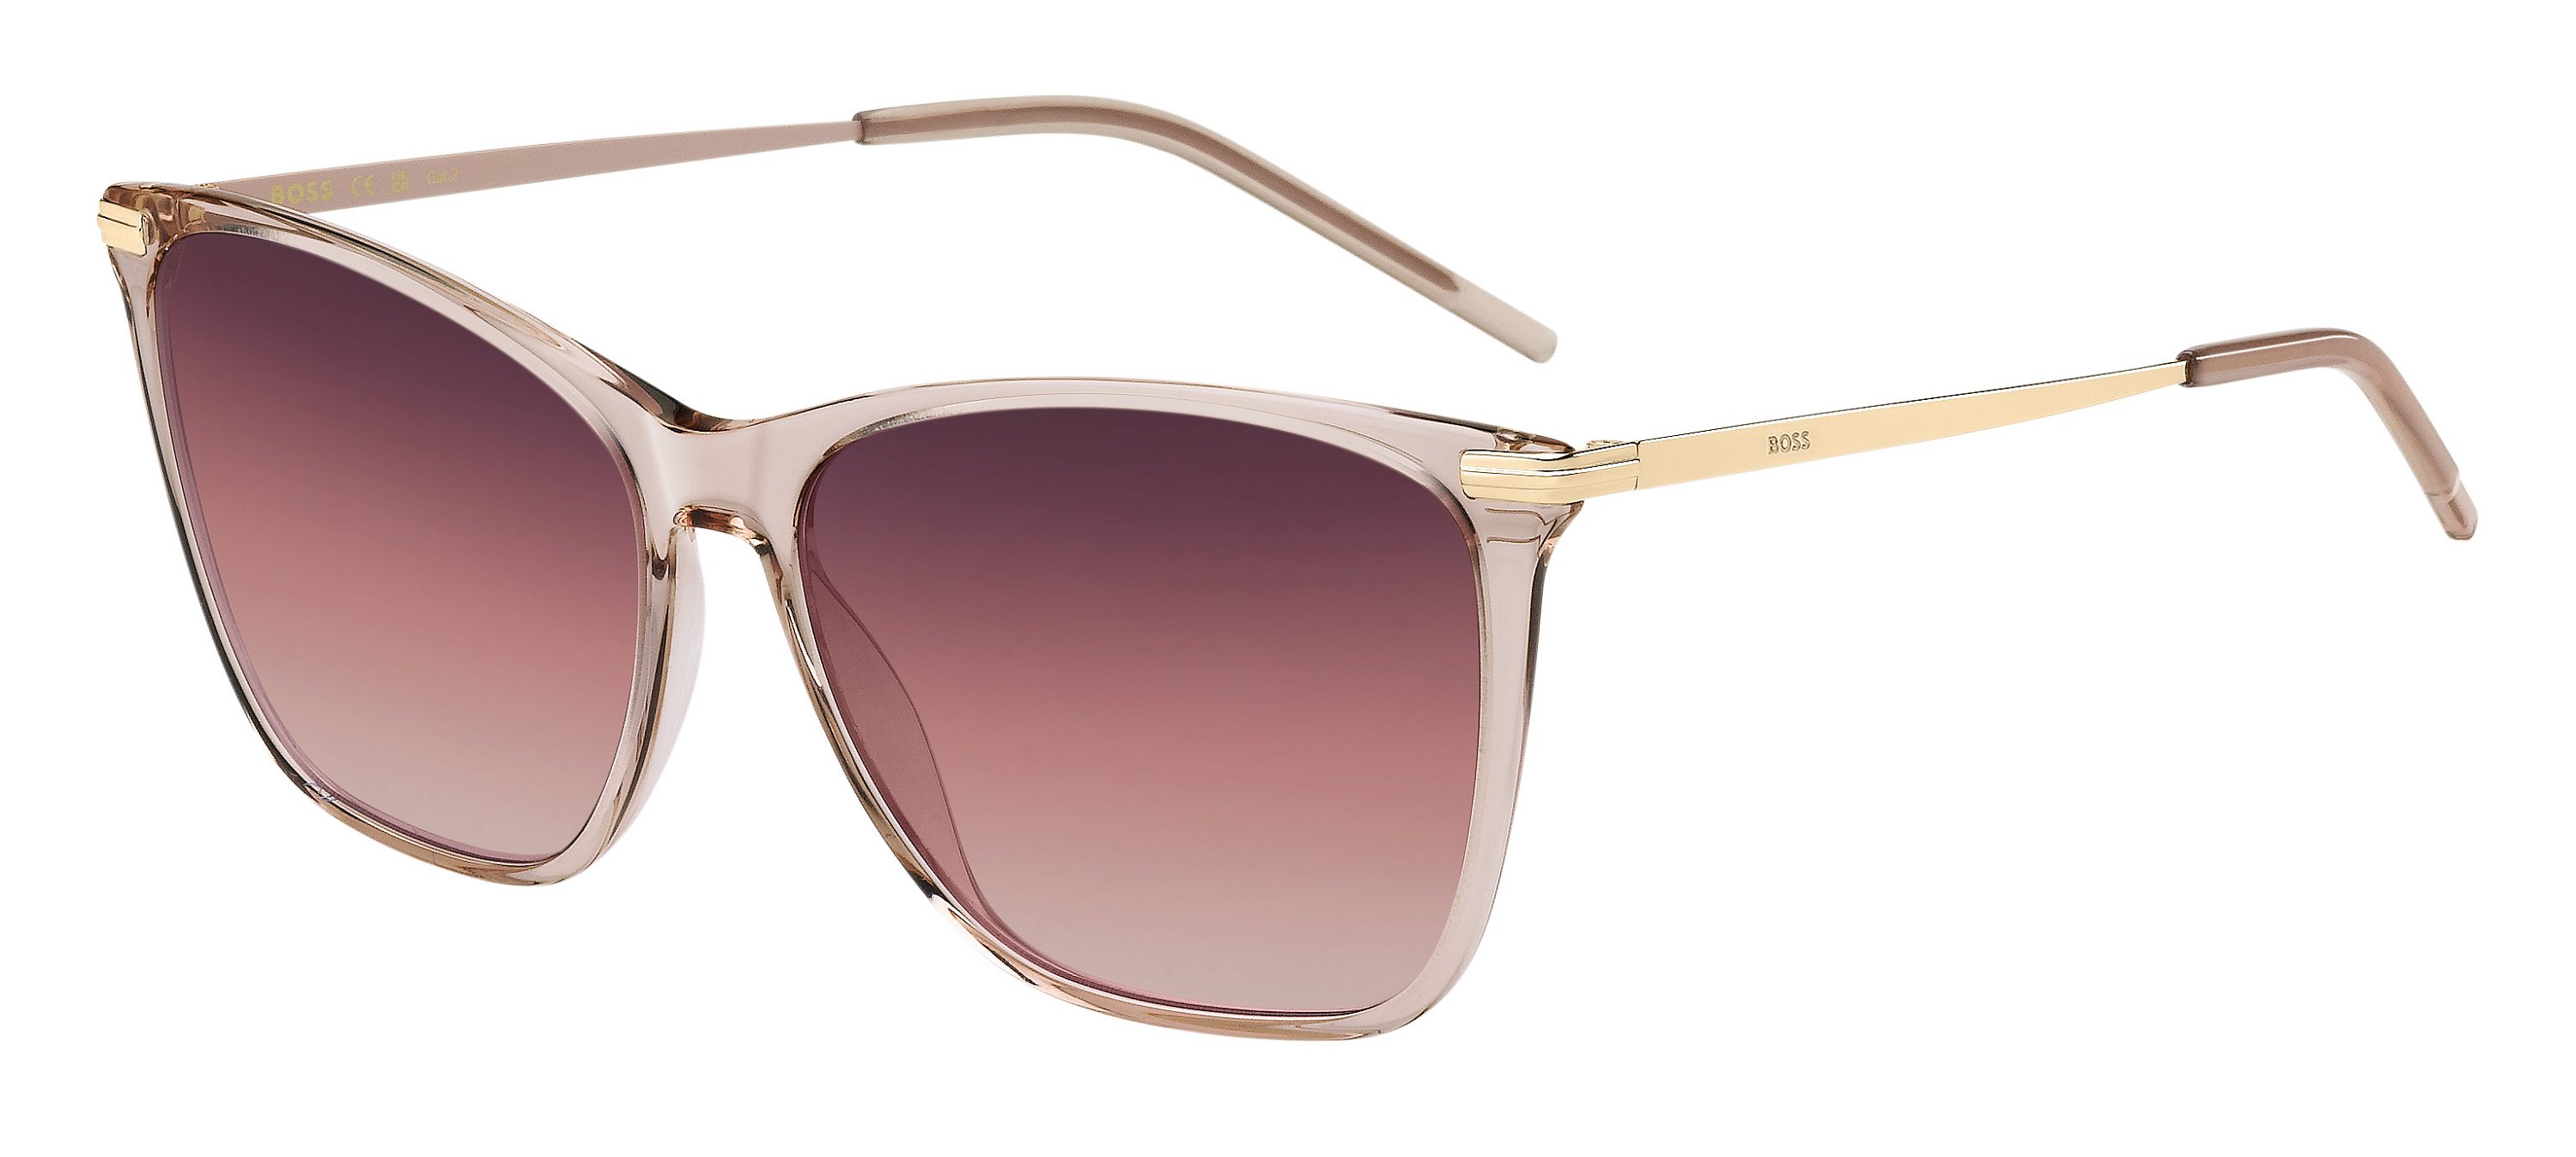 Das Bild zeigt die Sonnenbrille BOSS1661S S45 von der Marke BOSS in Pink/Gold.